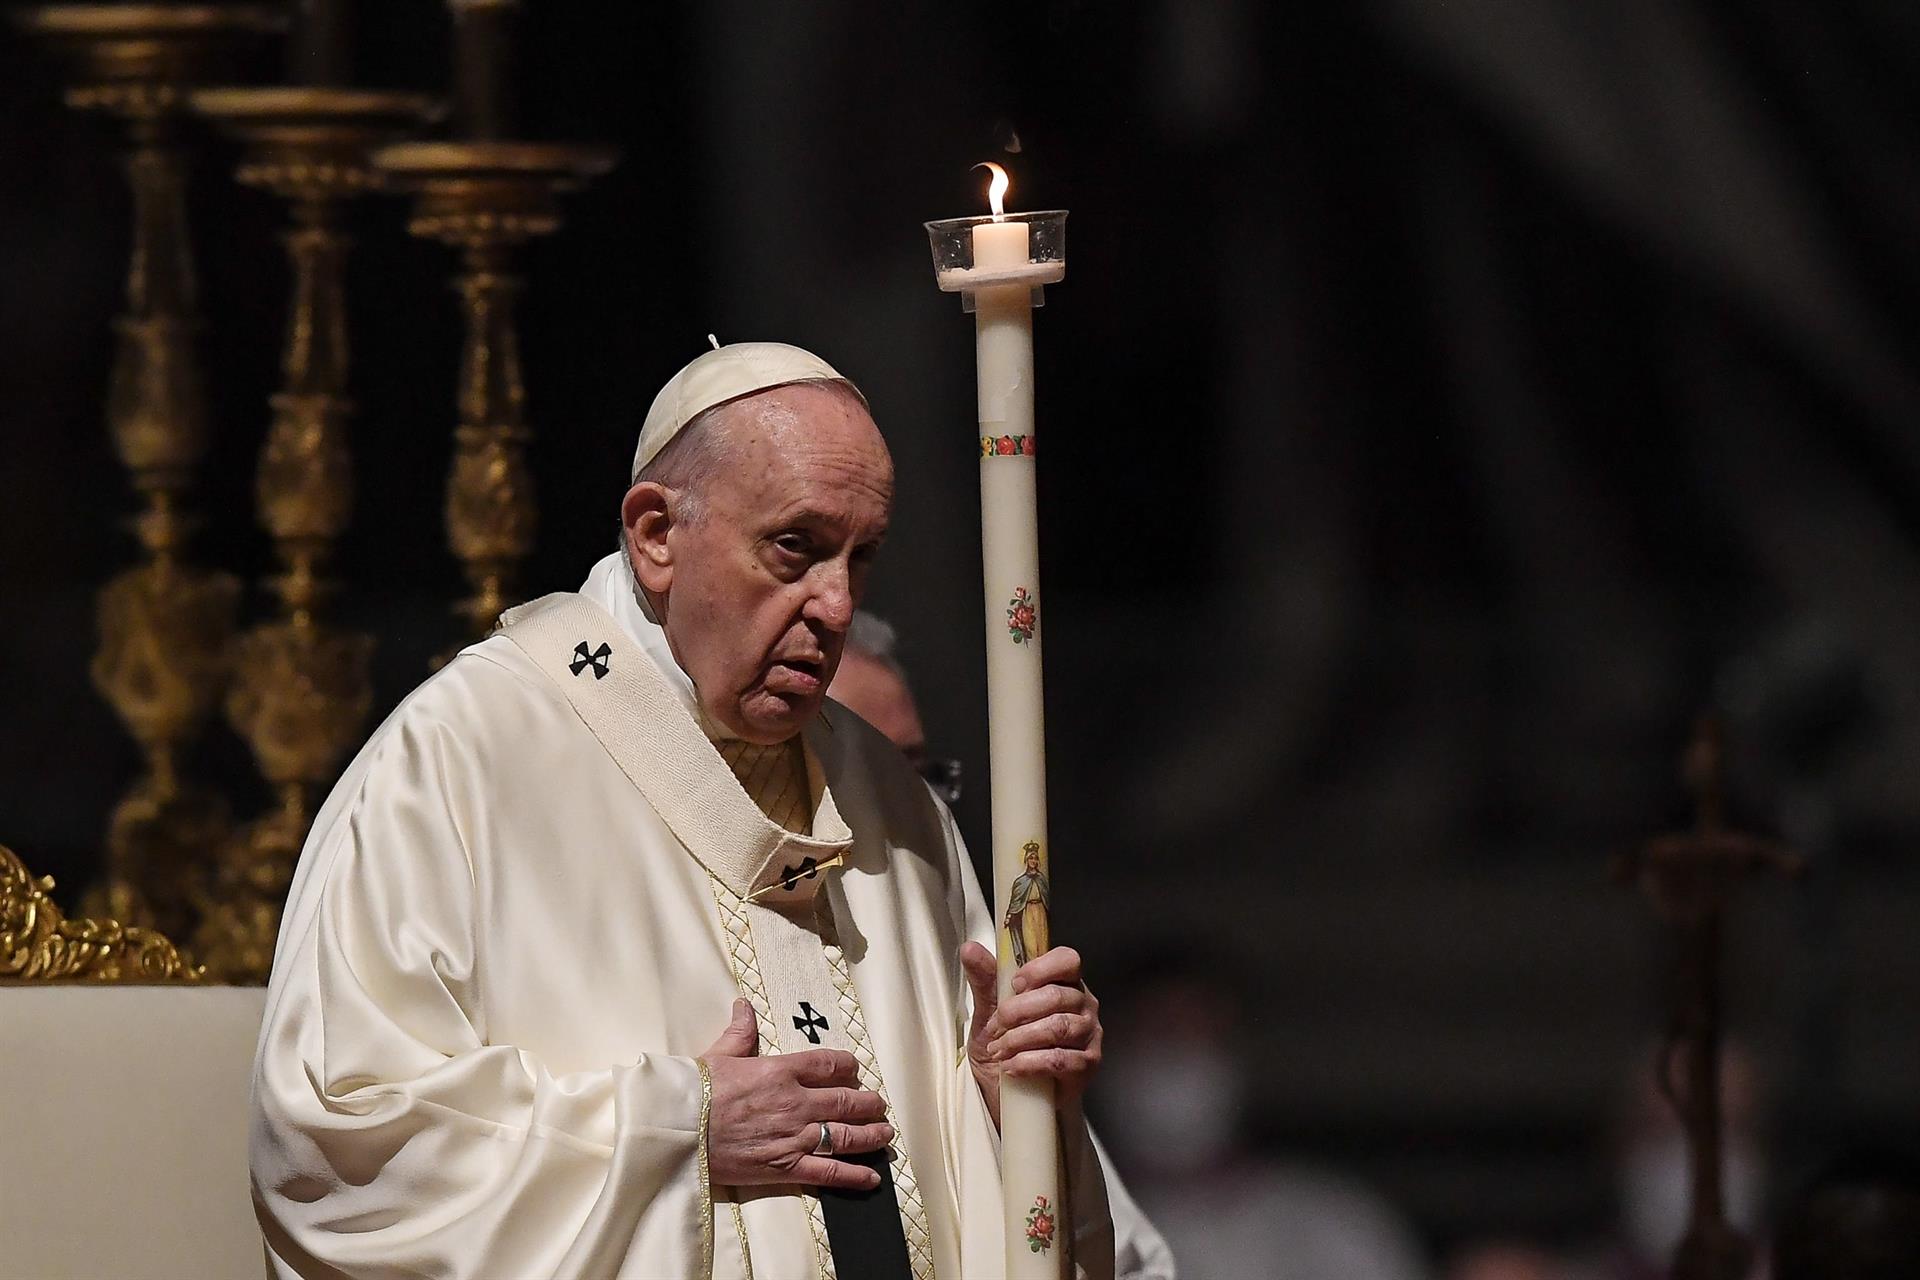 El papa Francisco: Mi pierna no está bien, el médico me ha pedido que no camine